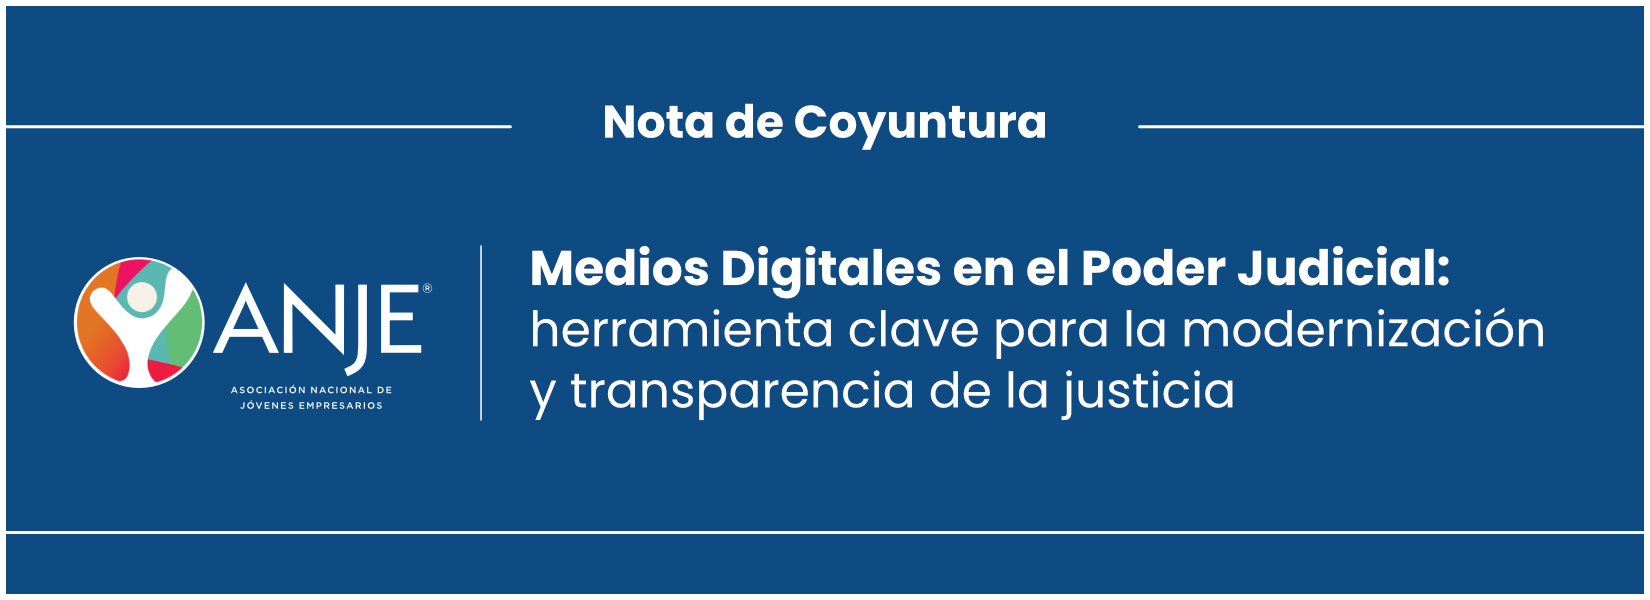 Medios Digitales en el Poder Judicial: herramienta clave para la modernización y transparencia de la justicia | Nota de Coyuntura #1